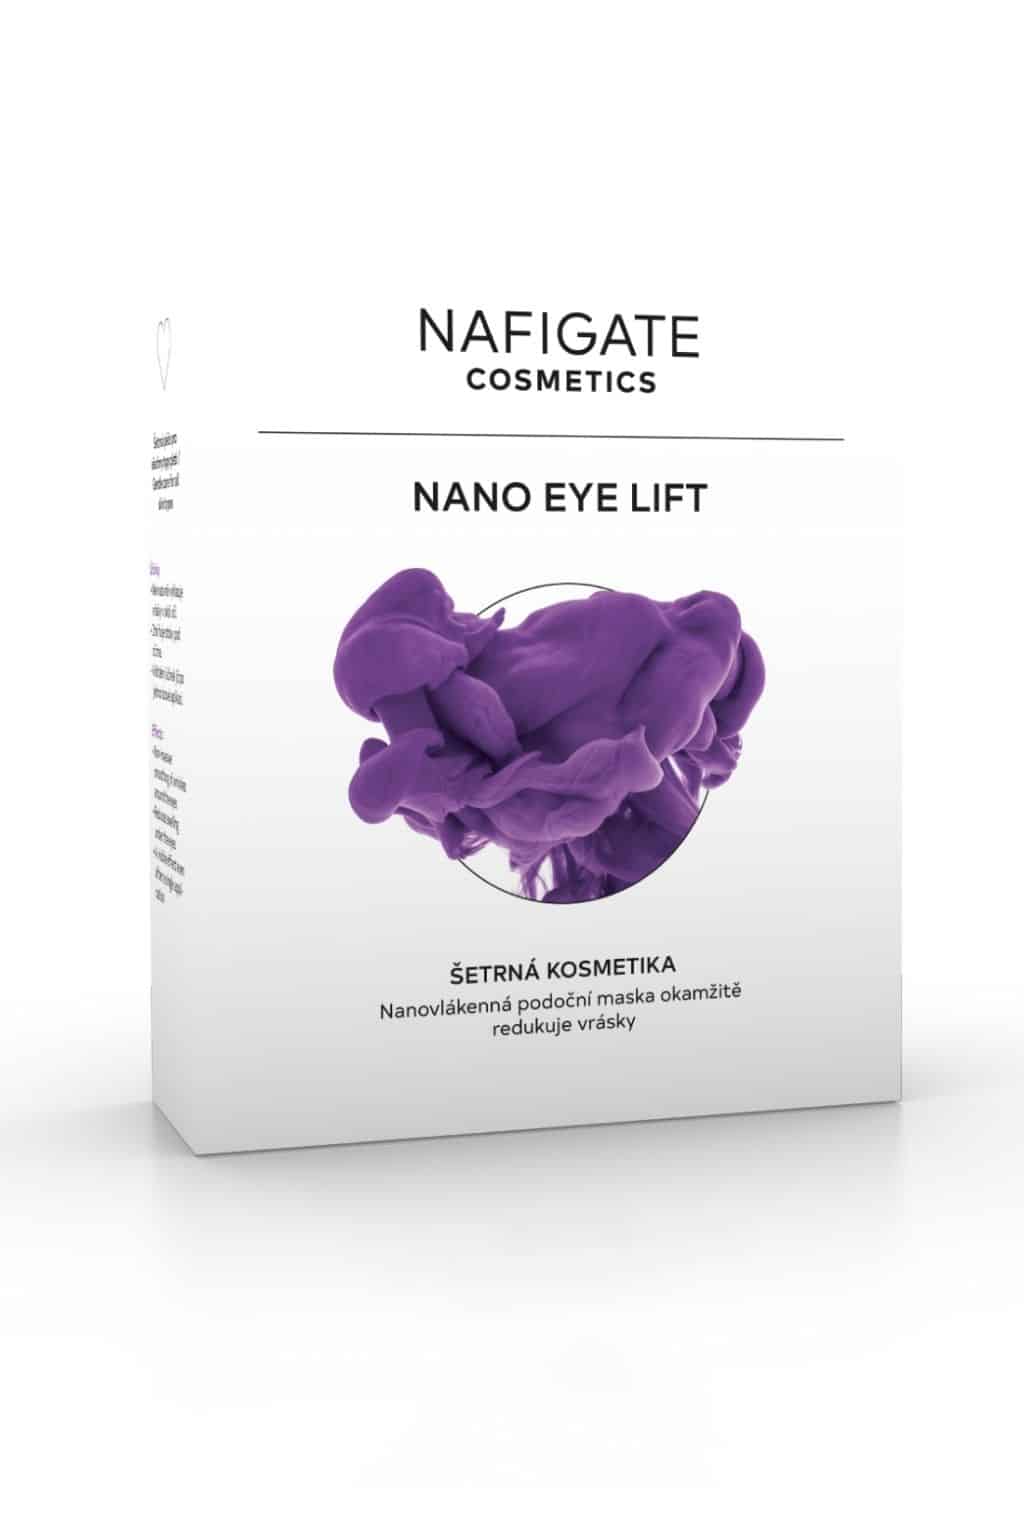 NAFIGATE Podoční maska pro okamžitou redukci vrásek – Nano Eye Lift 6+2